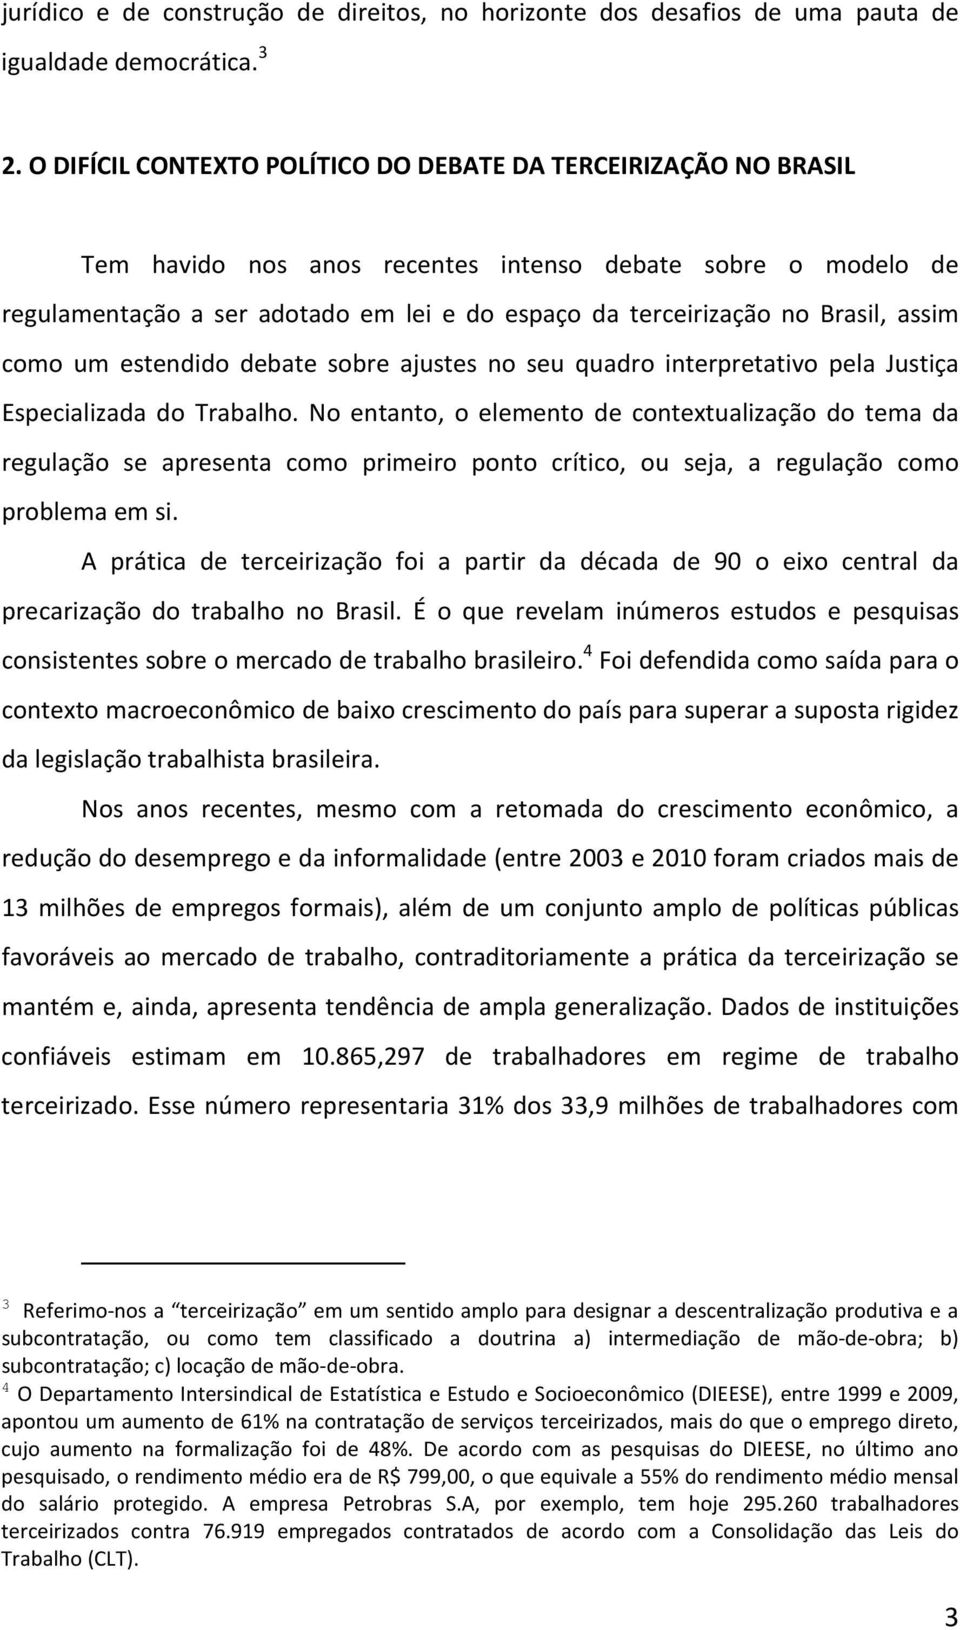 Brasil, assim como um estendido debate sobre ajustes no seu quadro interpretativo pela Justiça Especializada do Trabalho.